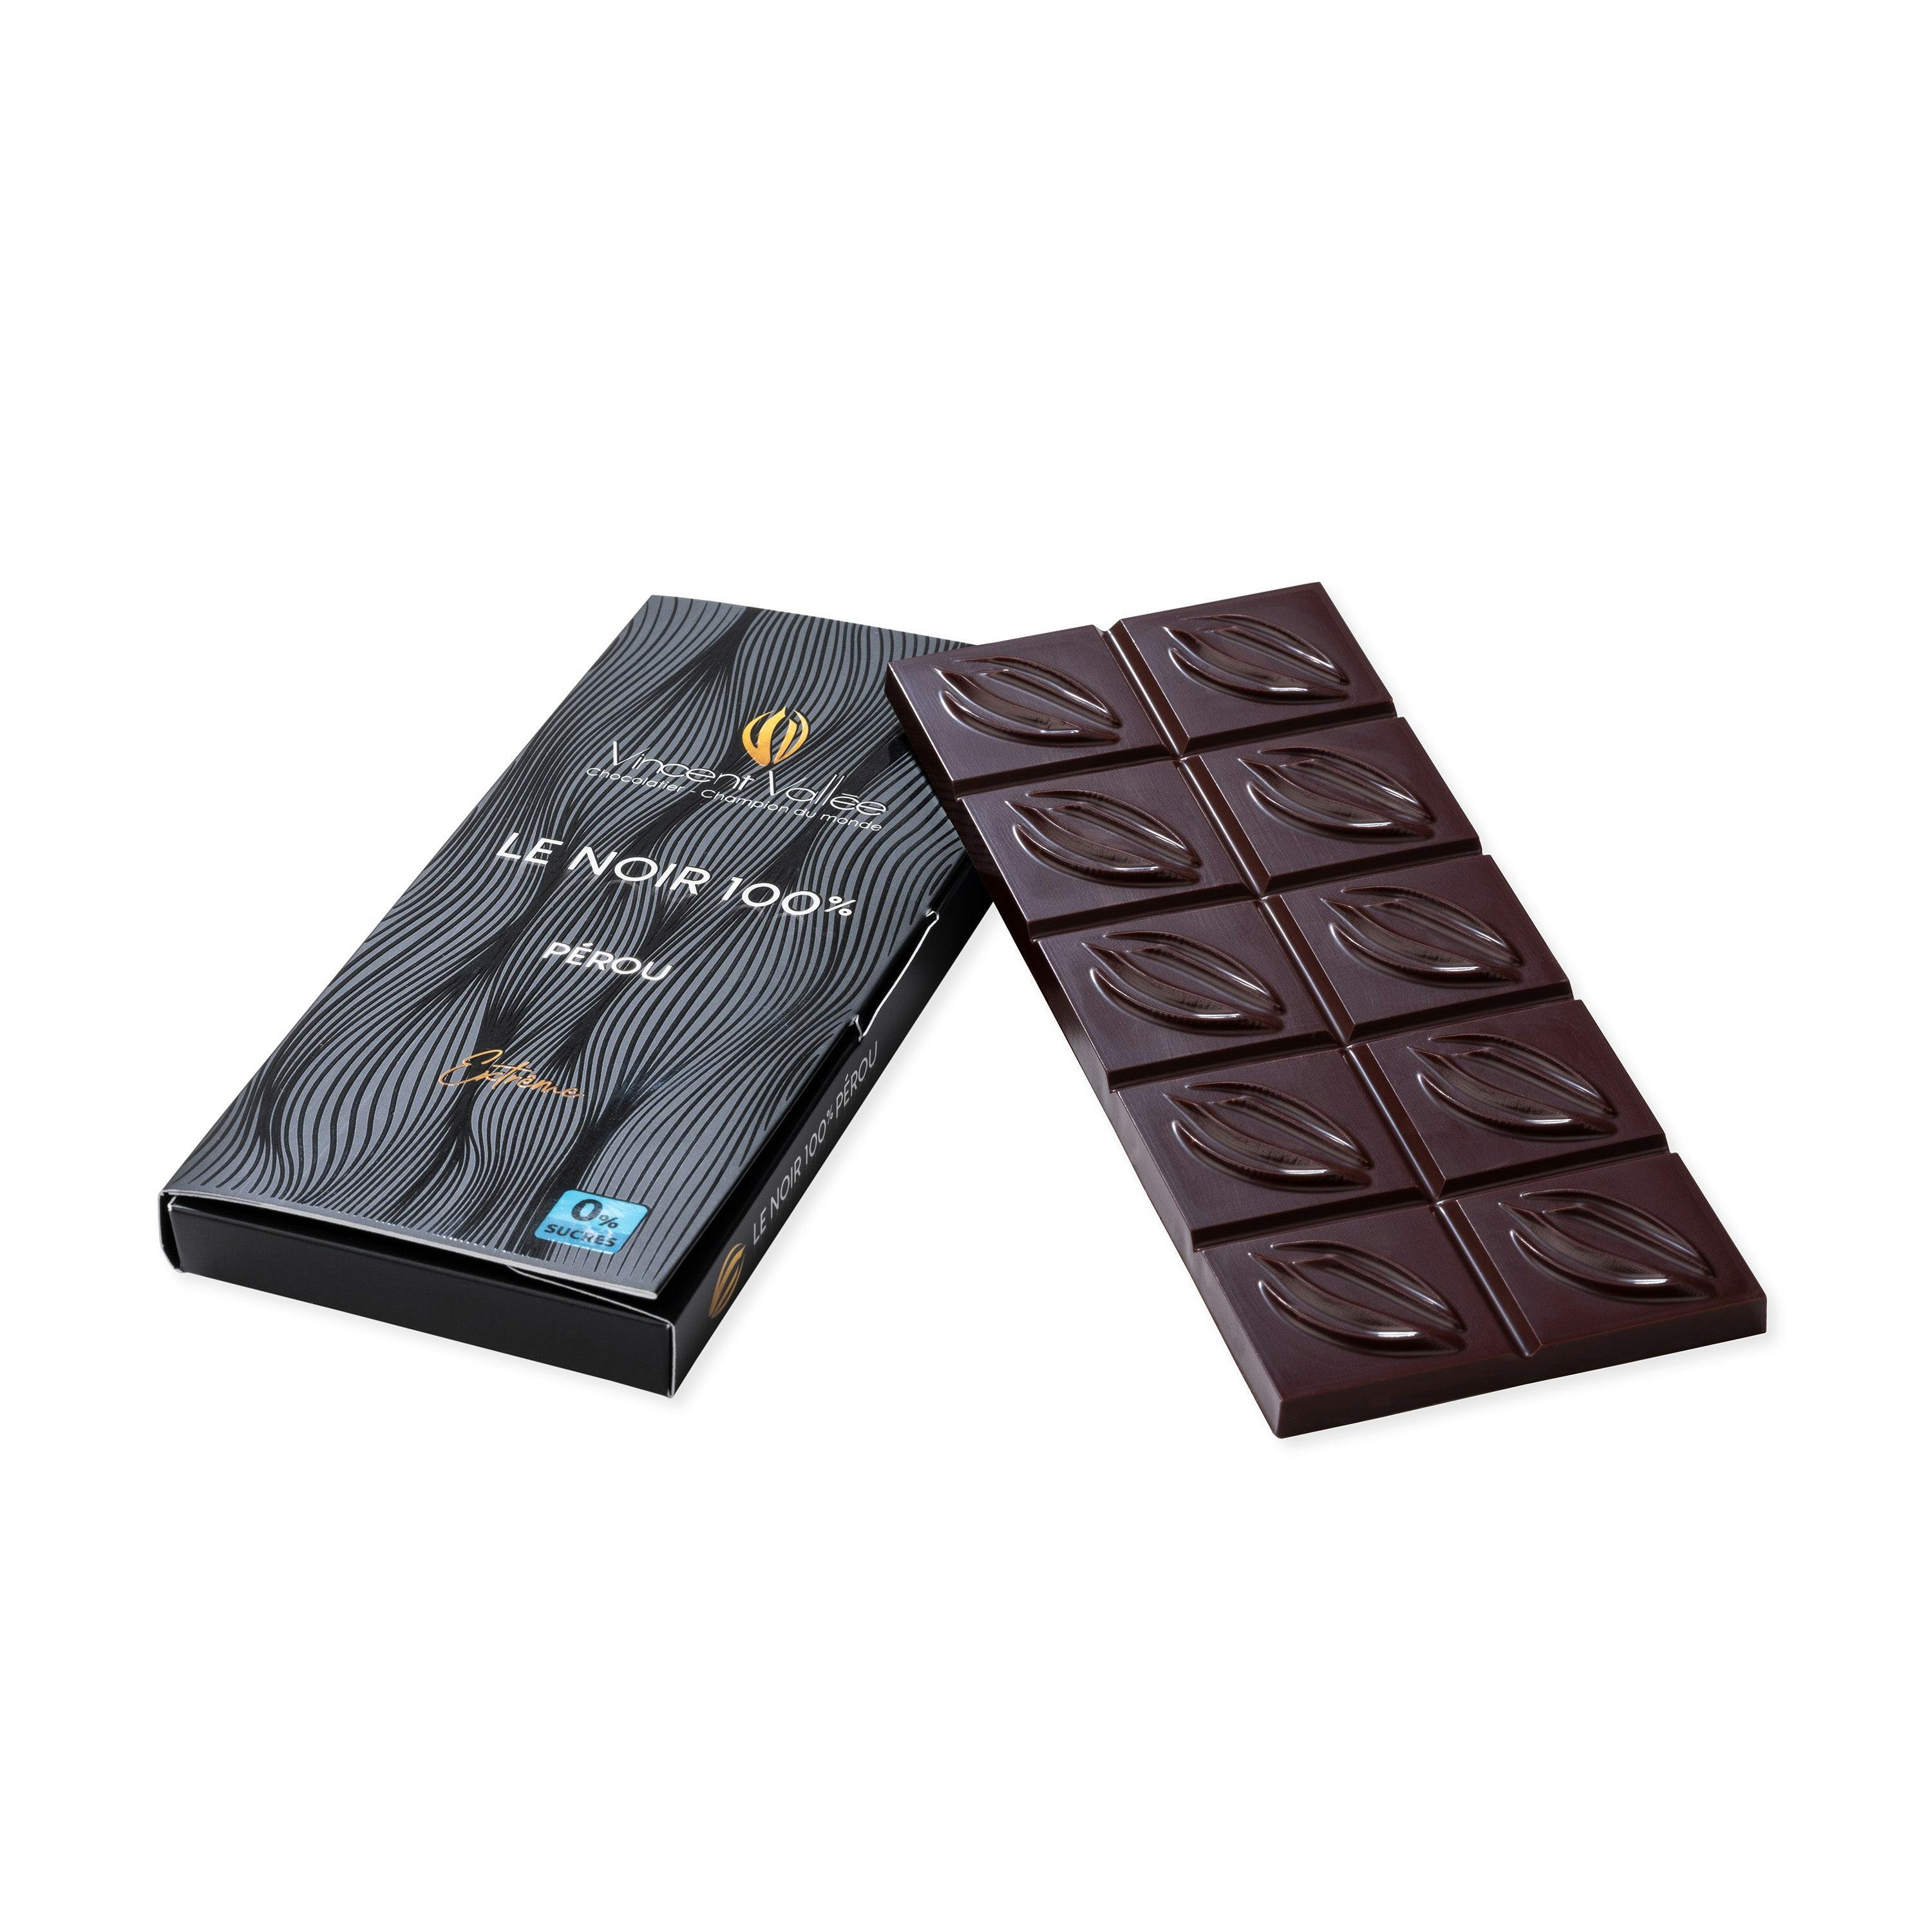 Pérou 100% (masse de cacao) - Vincent Vallée chocolatier champion du monde